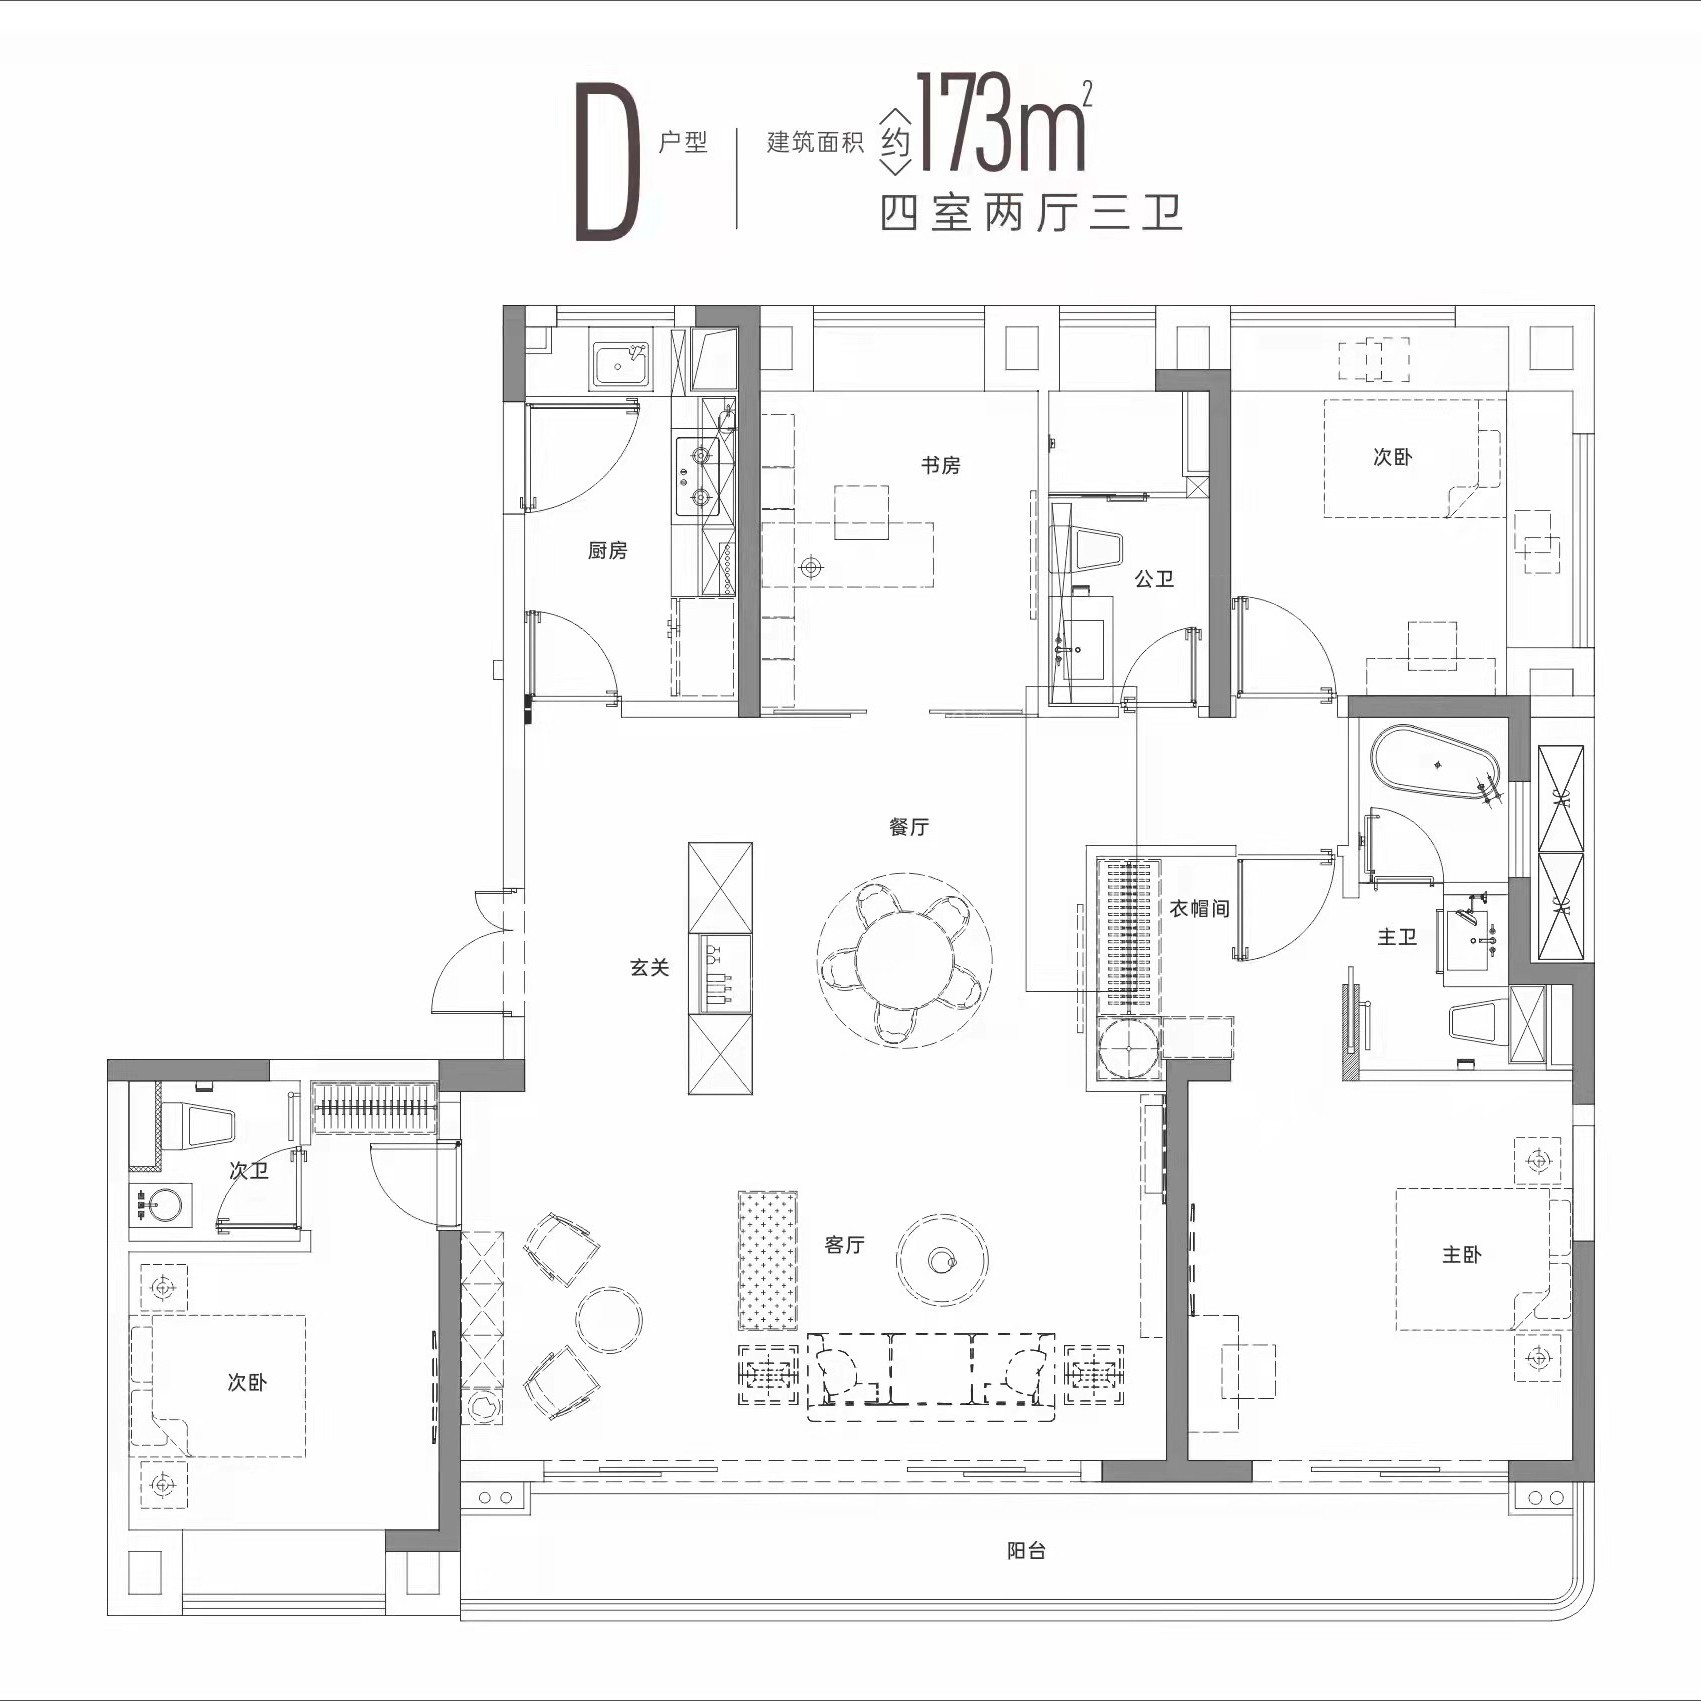 D户型173㎡ 四房两厅三卫